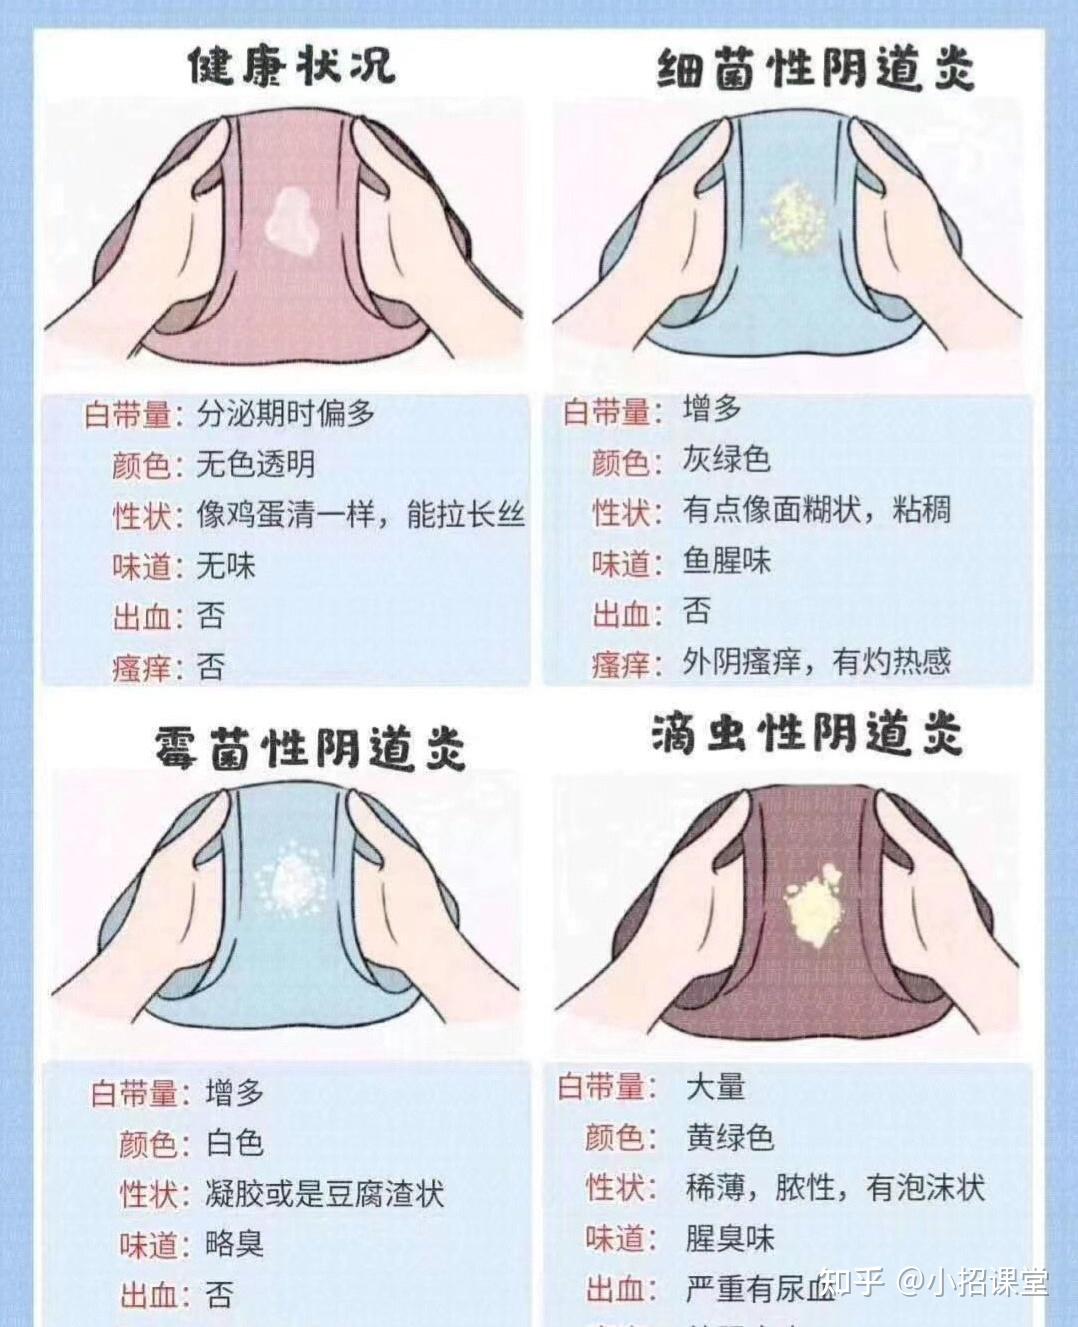 #分享 台北男性女乳手術 心得分享 - 醫美板 | Dcard